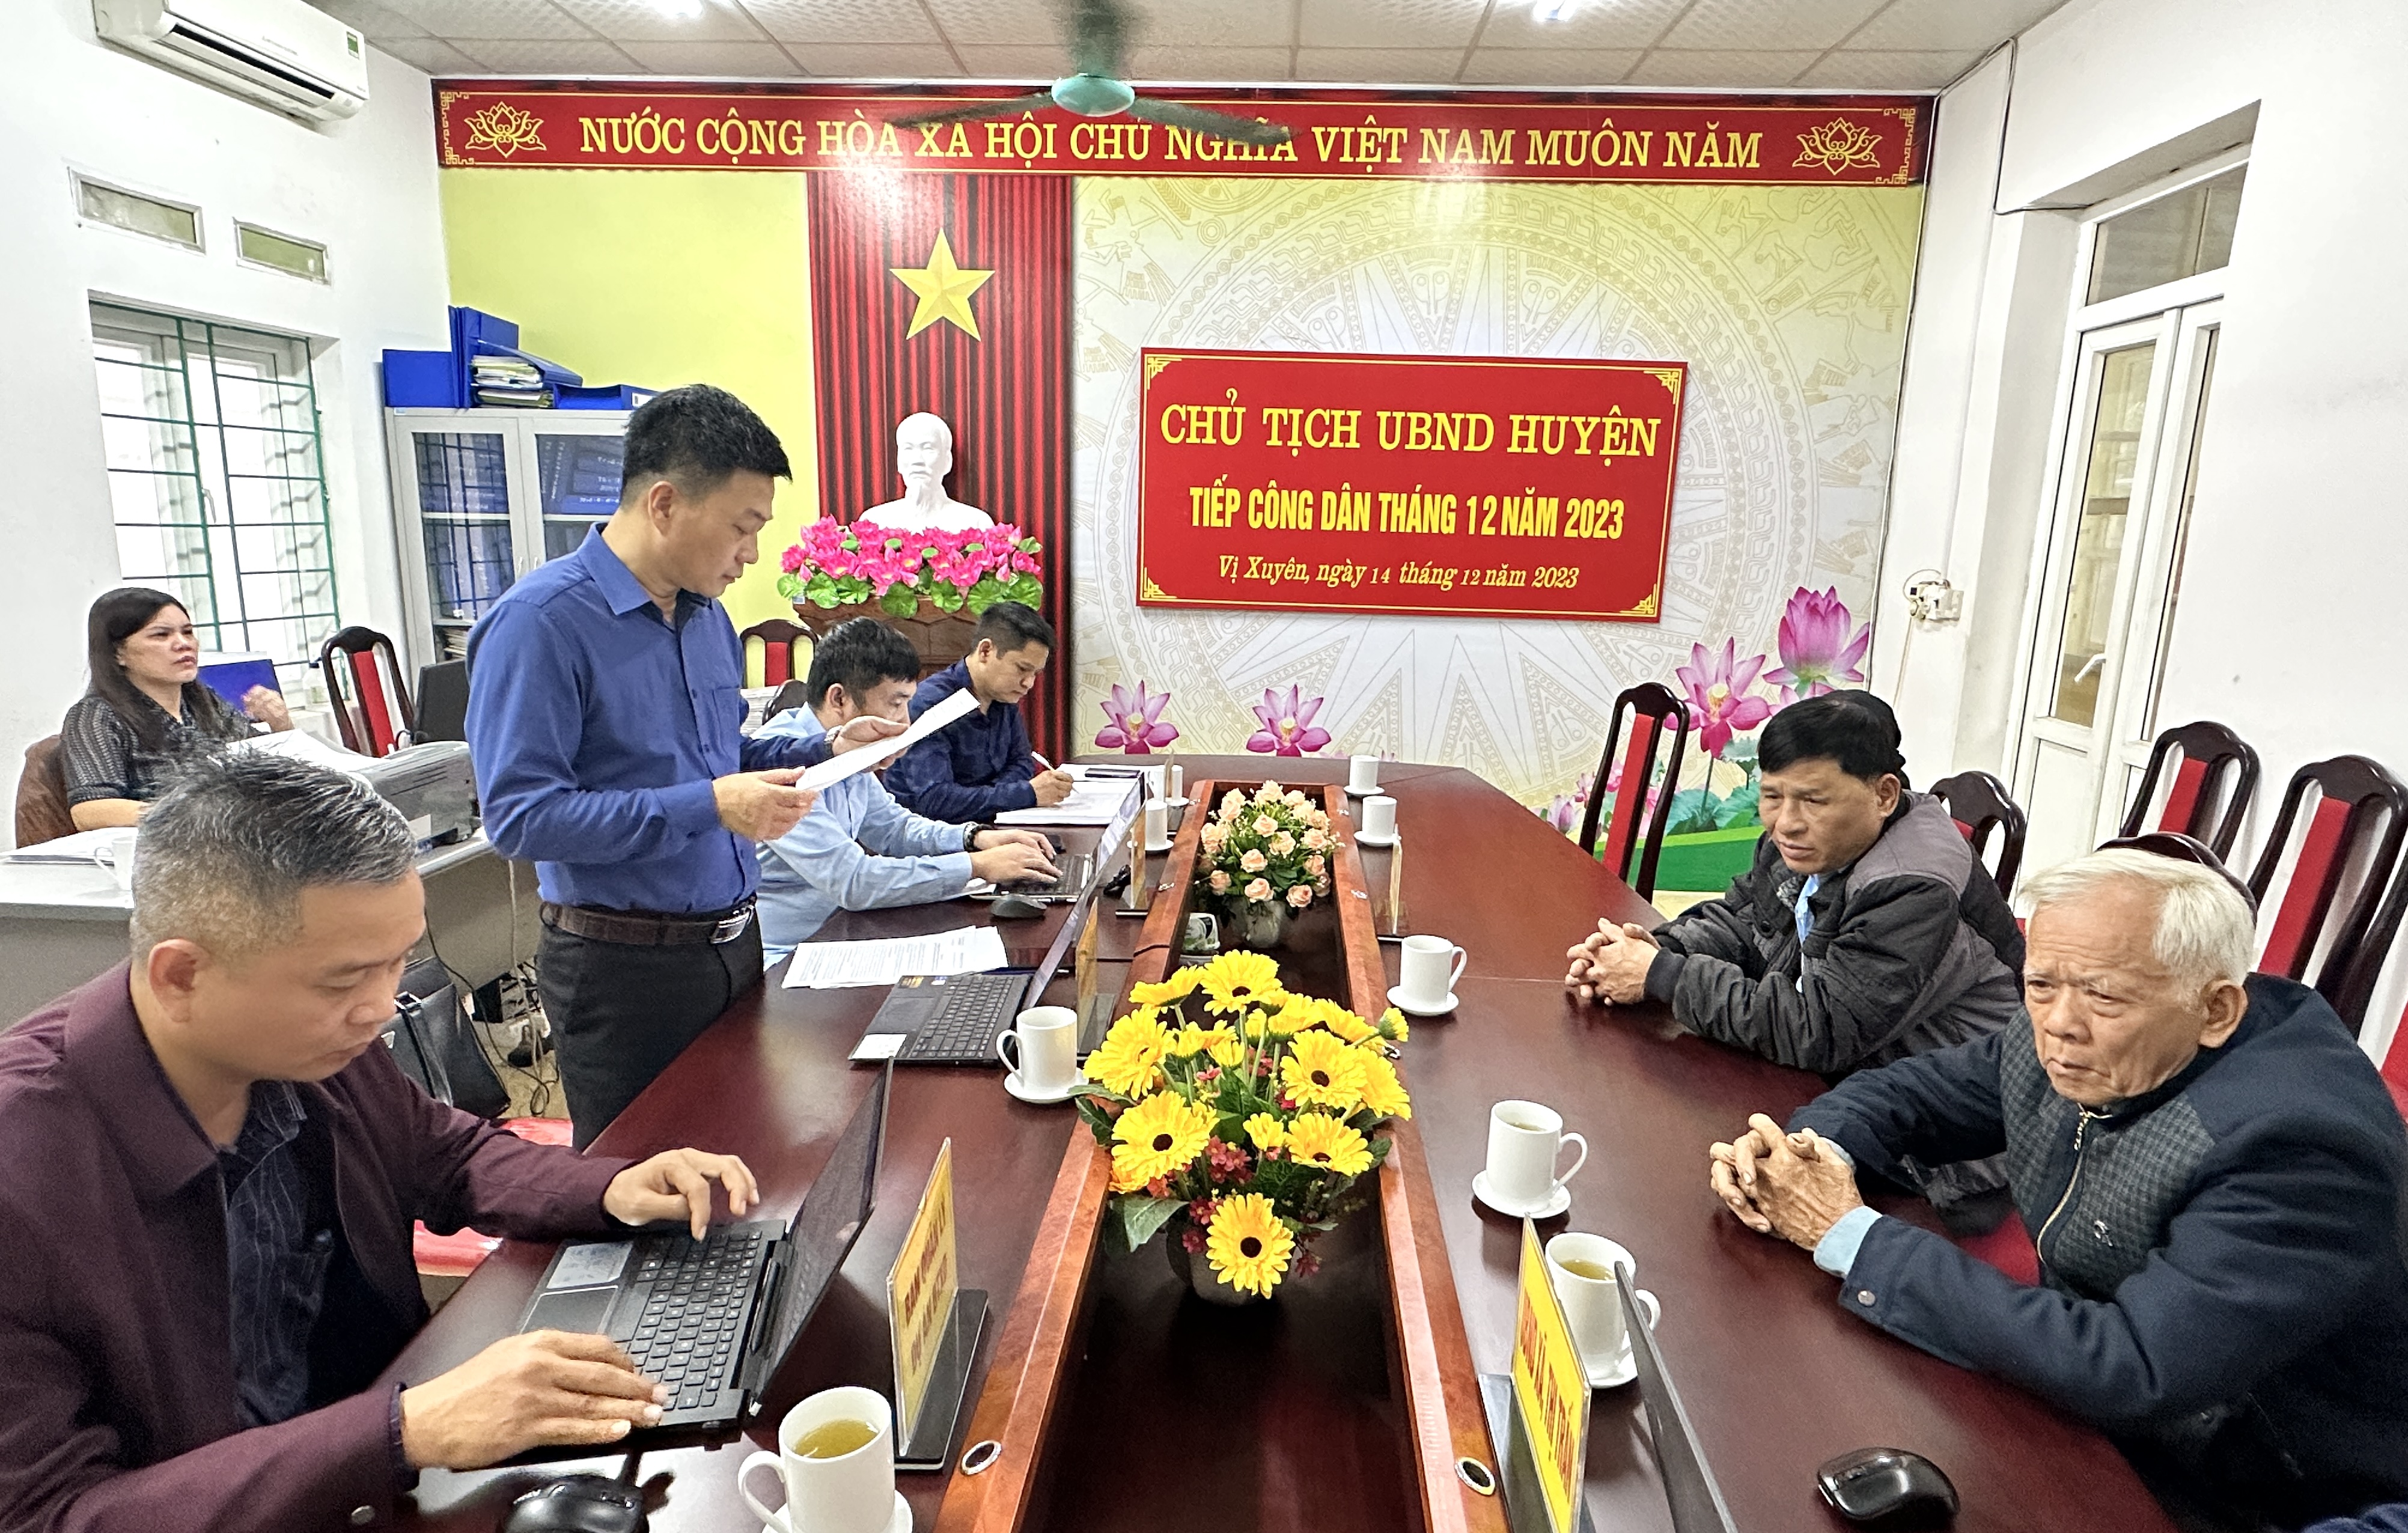 Chủ tịch UBND huyện Hoàng Thanh Tịnh tiếp công dân định kỳ tháng 12